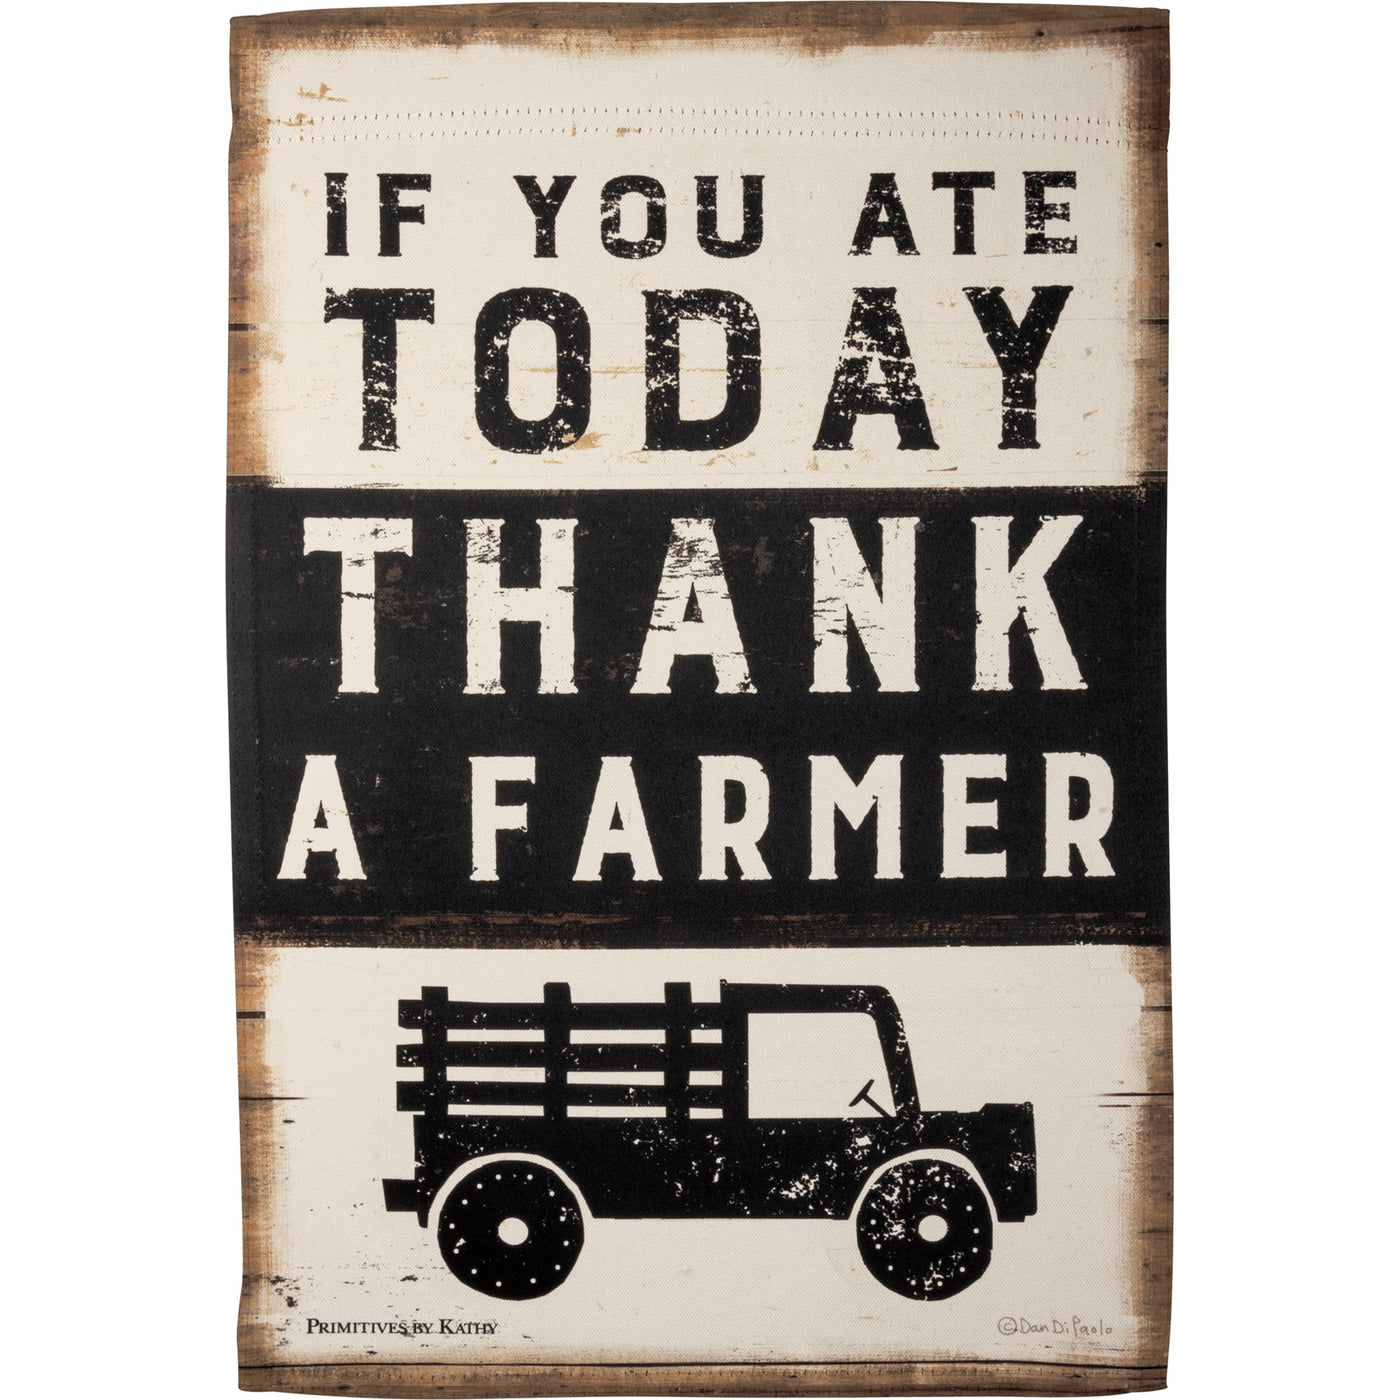 💙 If You Ate Today Thank A Farmer Garden Flag